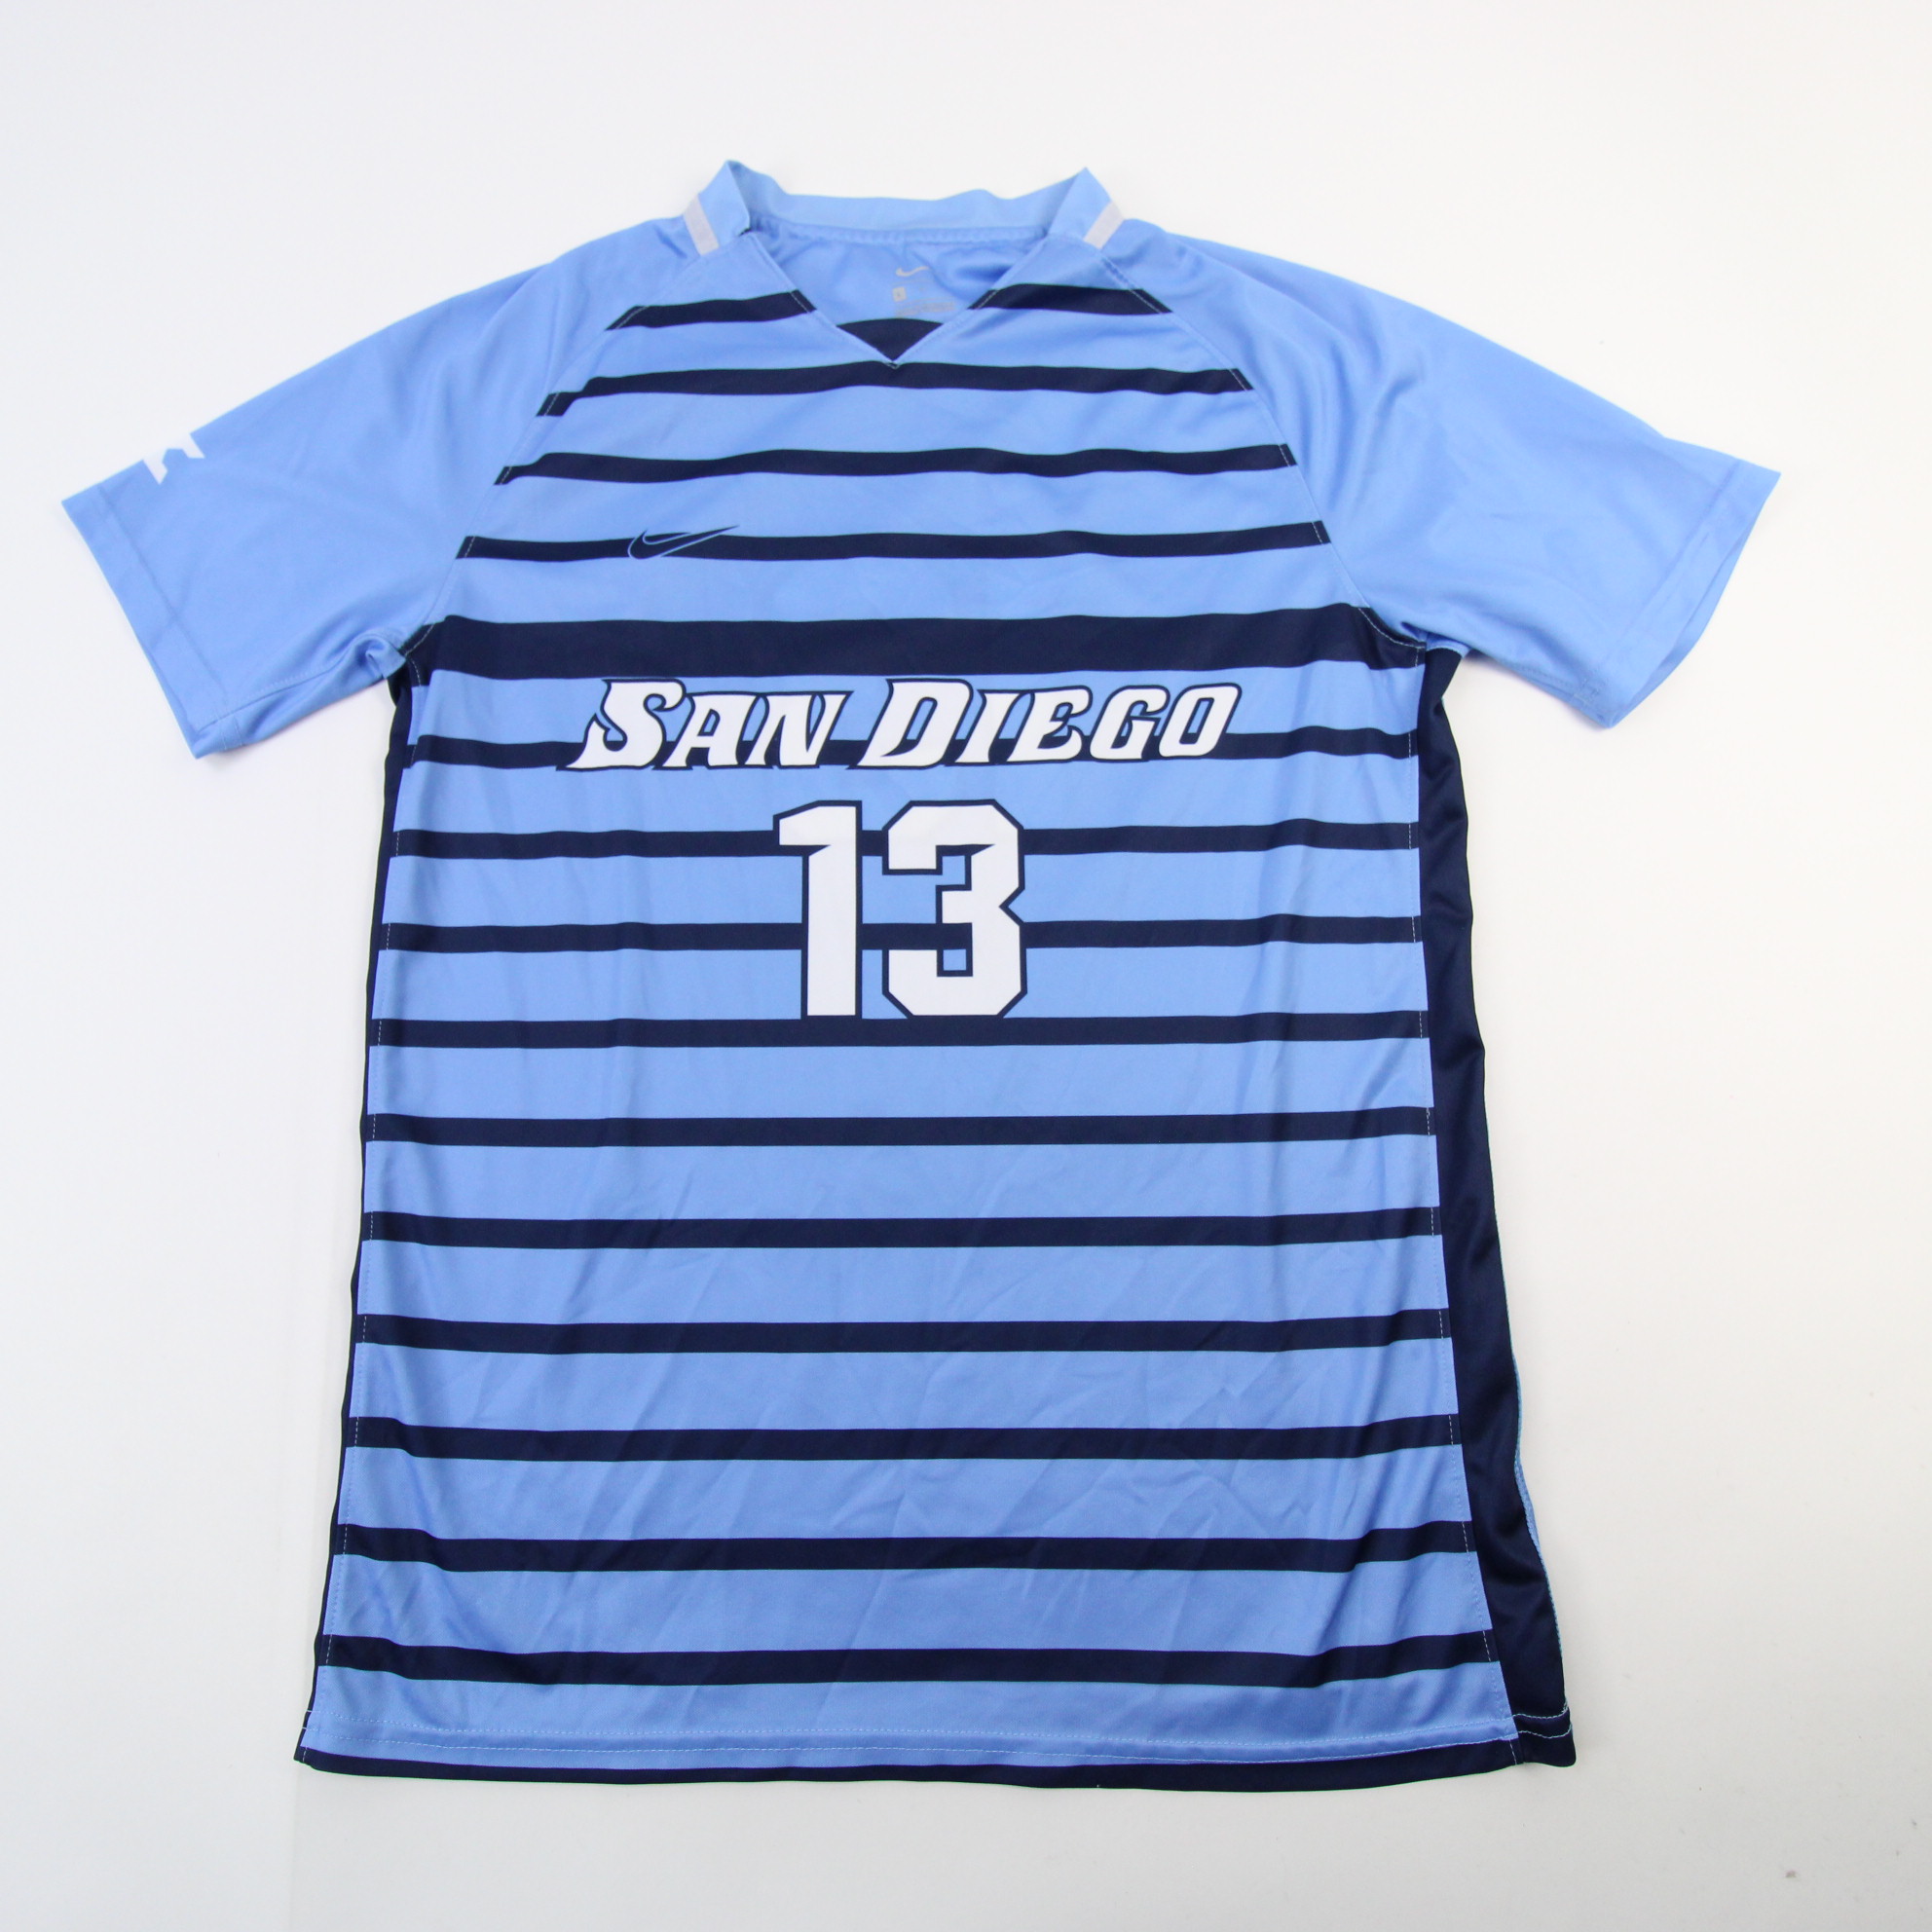 San Diego Toreros Nike Team Game Jersey - Baseball Men's White/Navy  Used